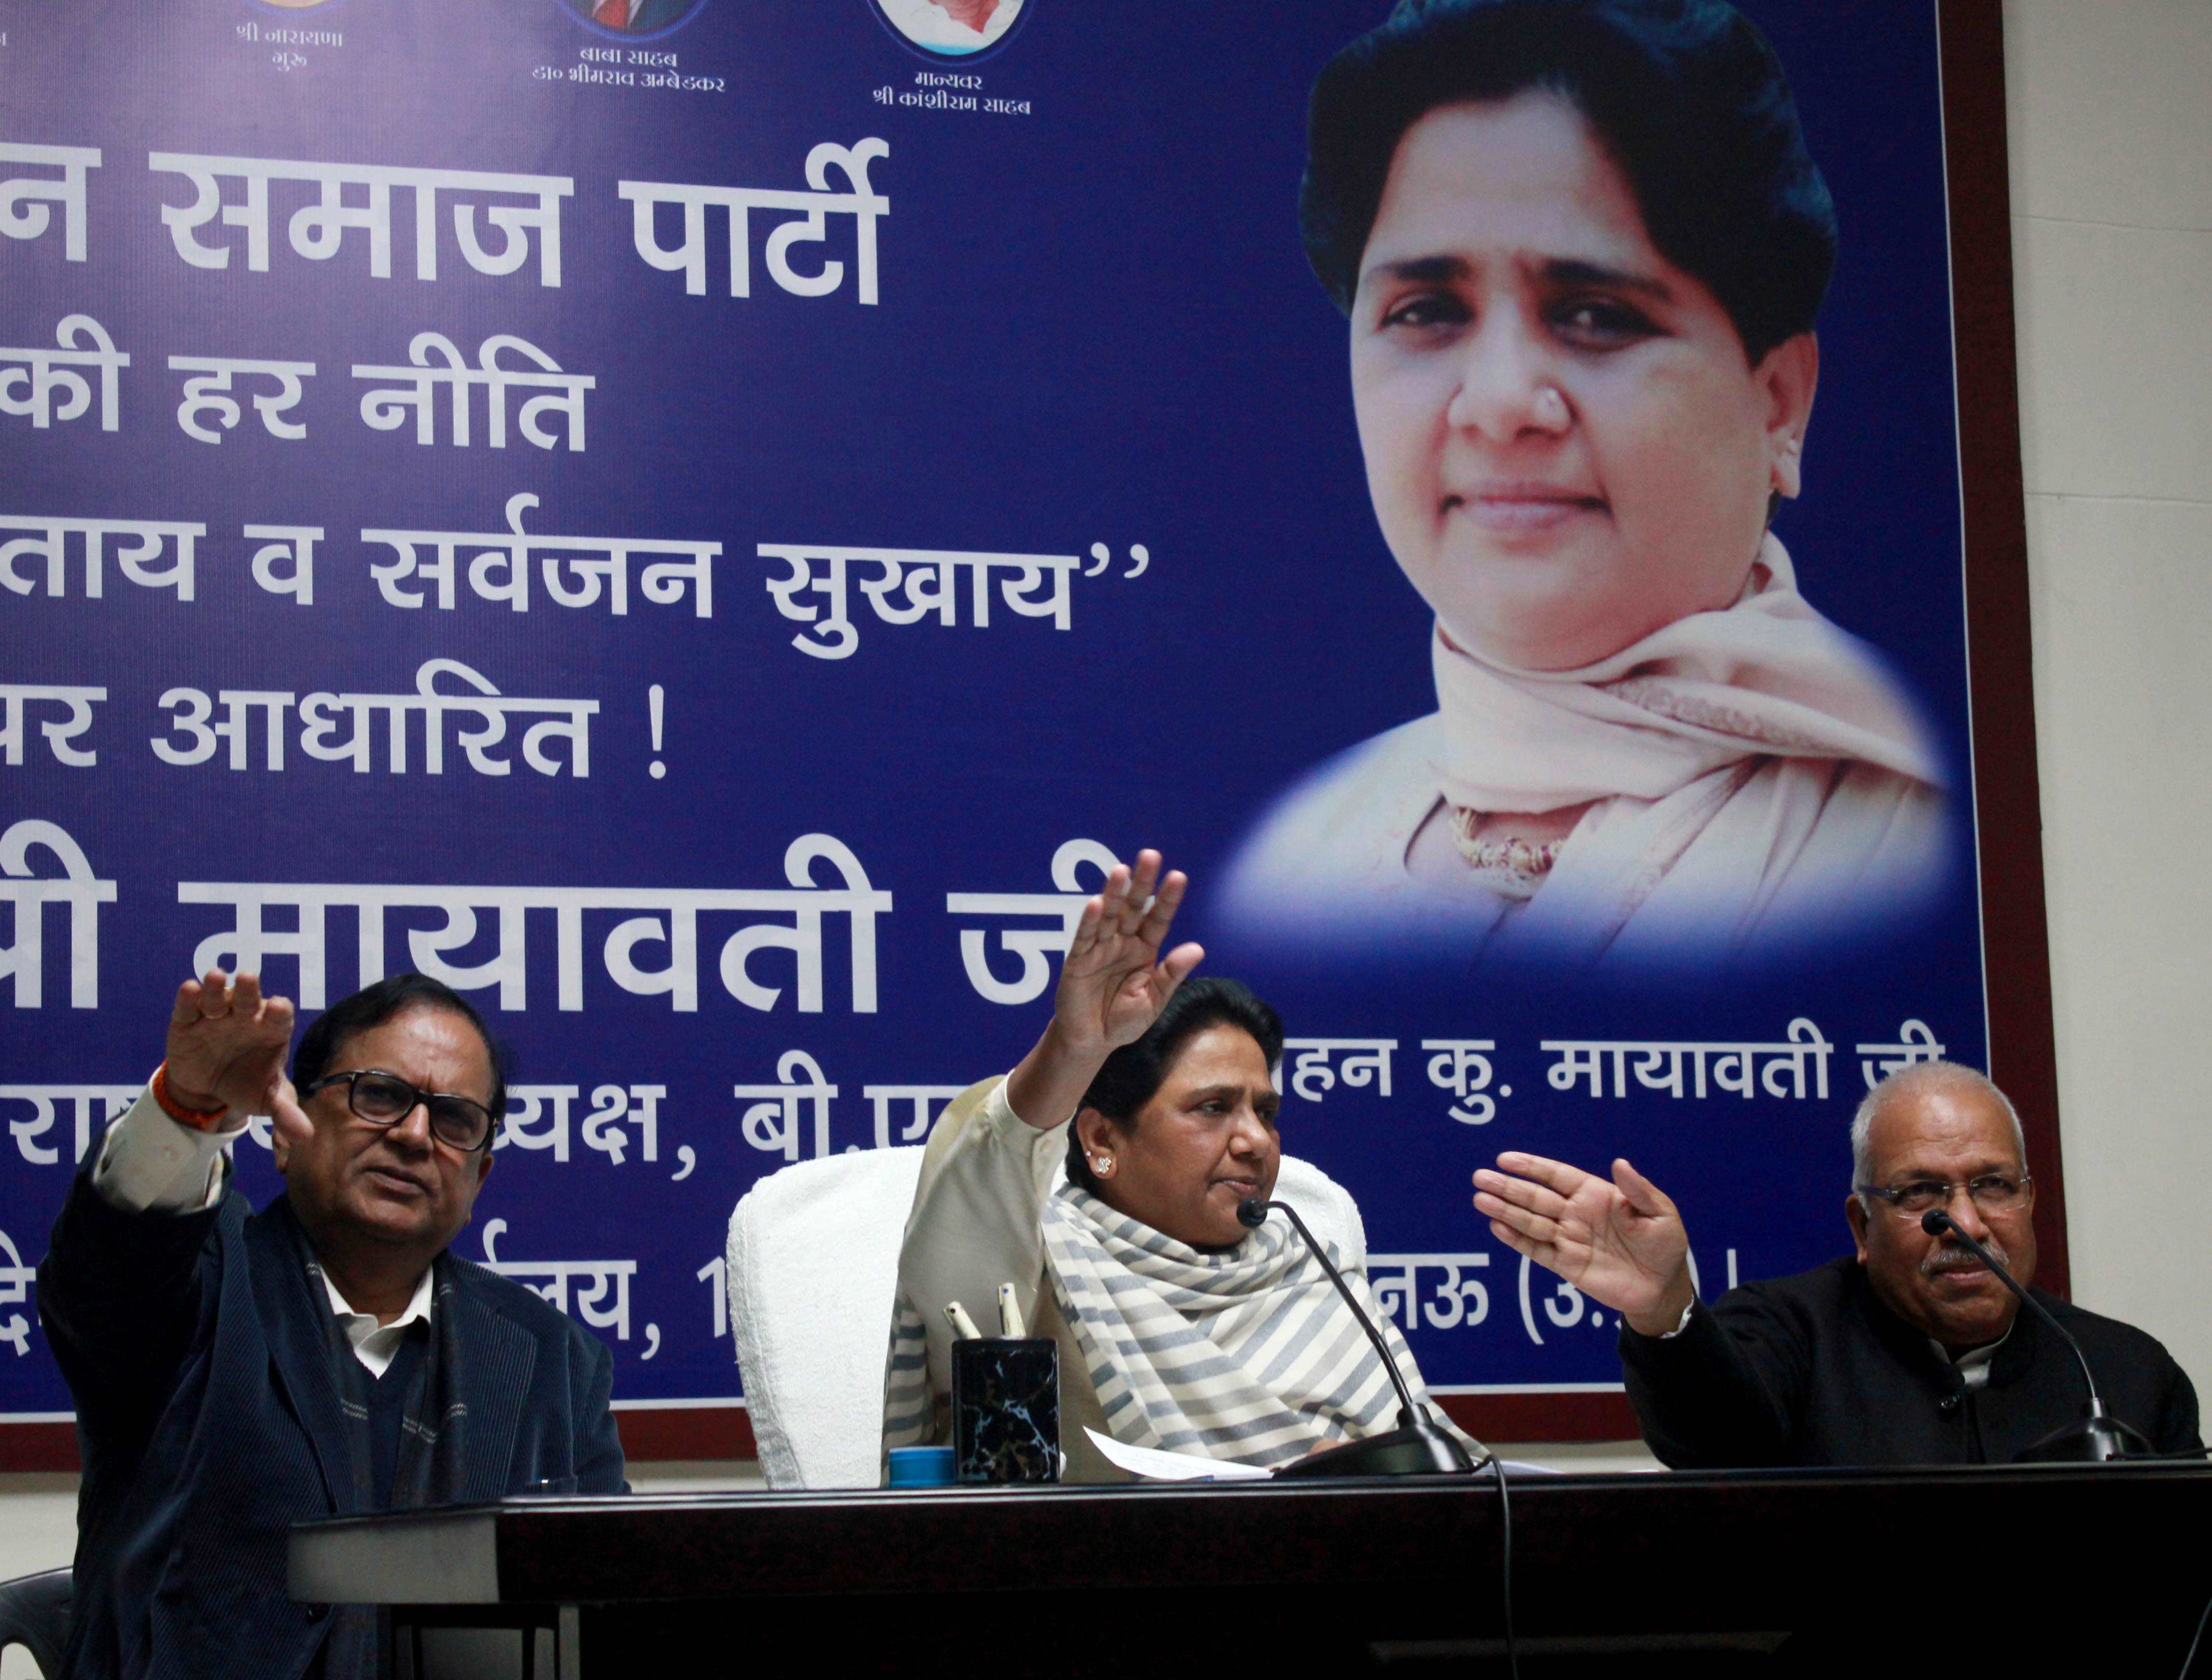 मायावती की कांग्रेस को सलाह, समाजवादी पार्टी के साथ मिलकर ना लड़े उत्तर प्रदेश के चुनाव 